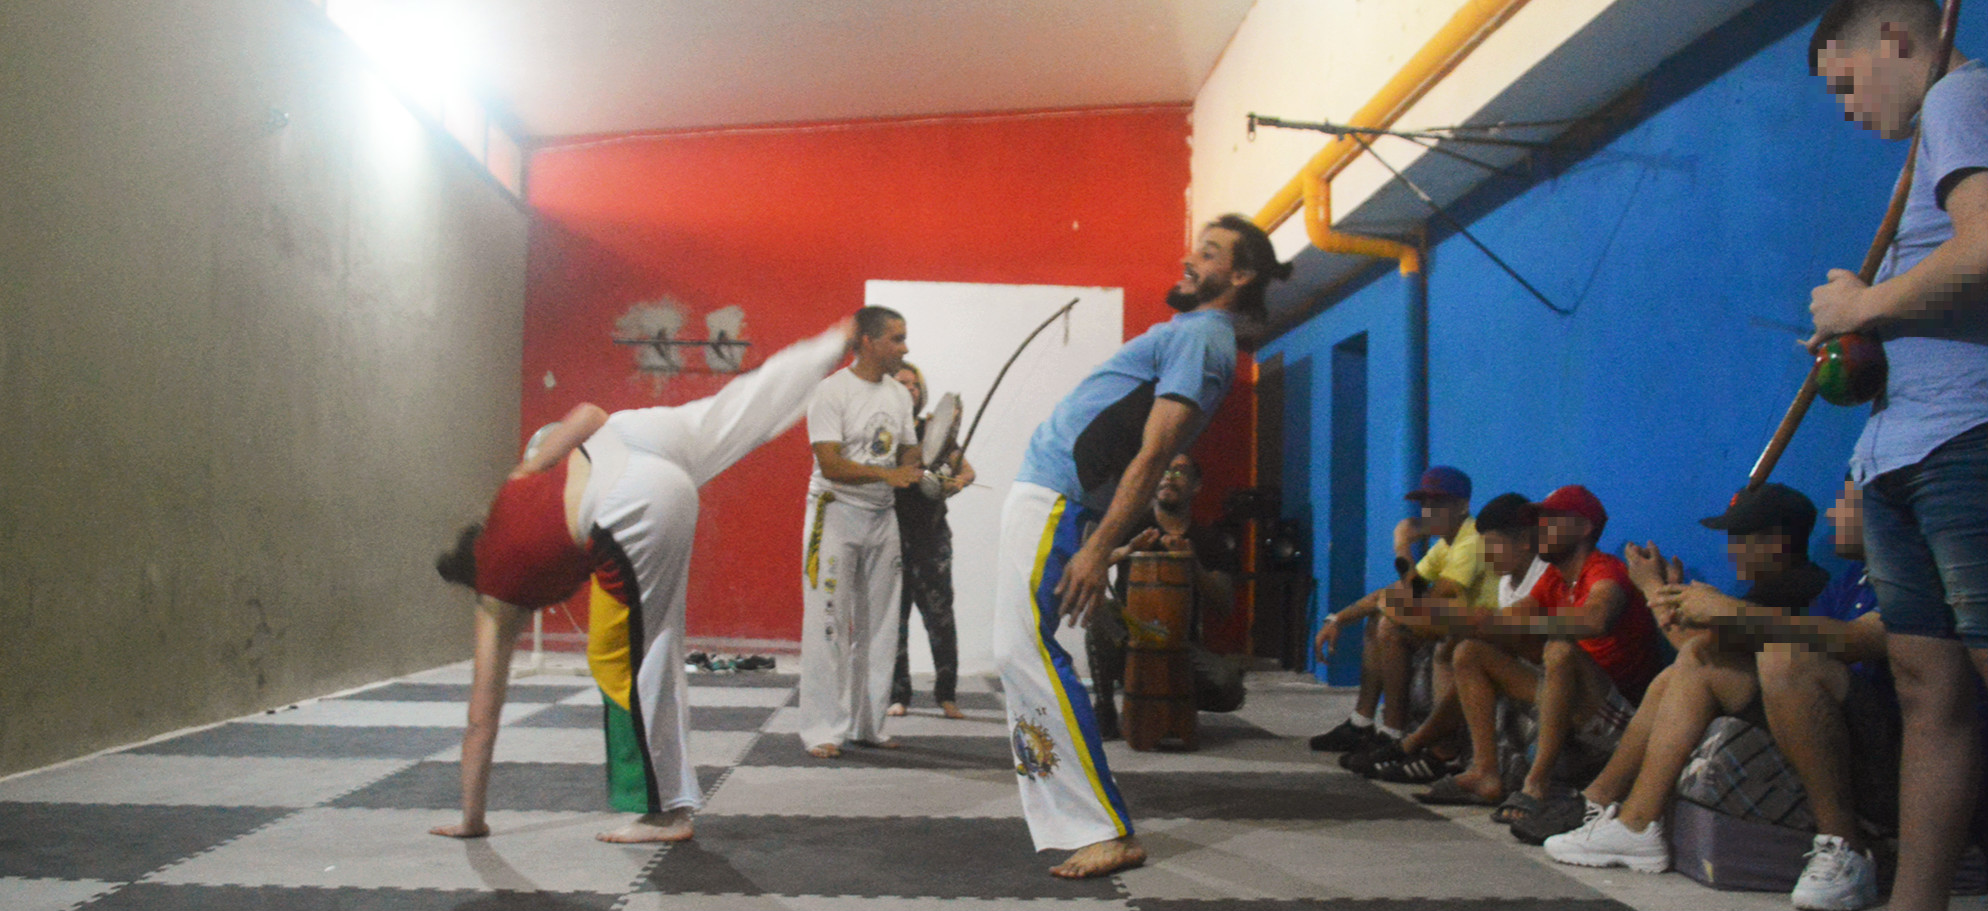 Foto de demostración de Capoeira